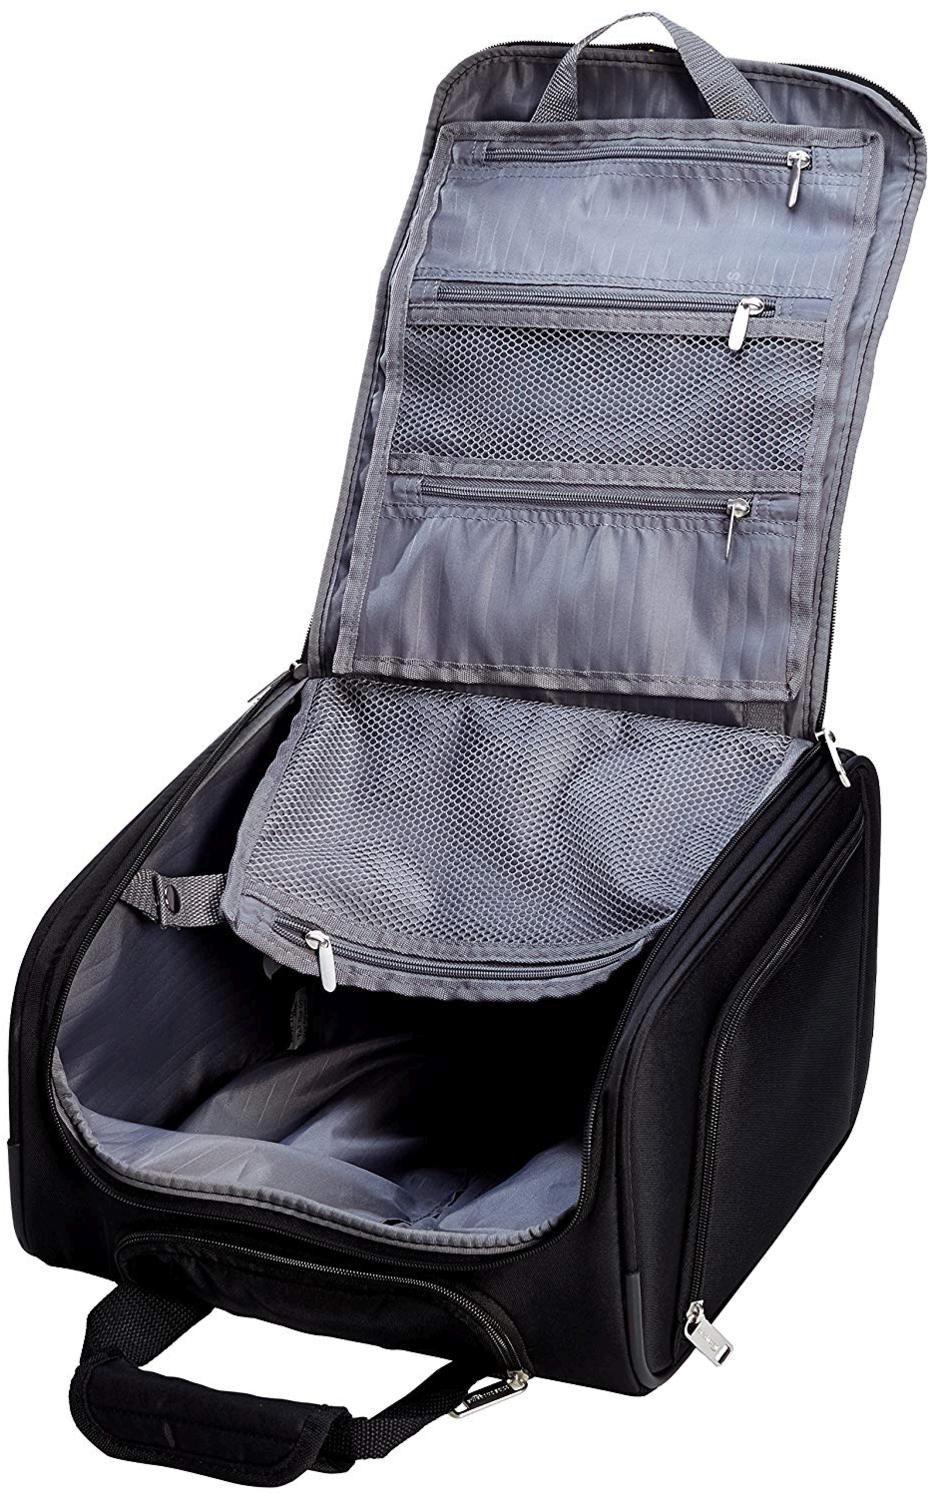 AmazonBasics Underseat Carry-On Rolling Travel Luggage Bag,, Black, Size 13.0 | eBay